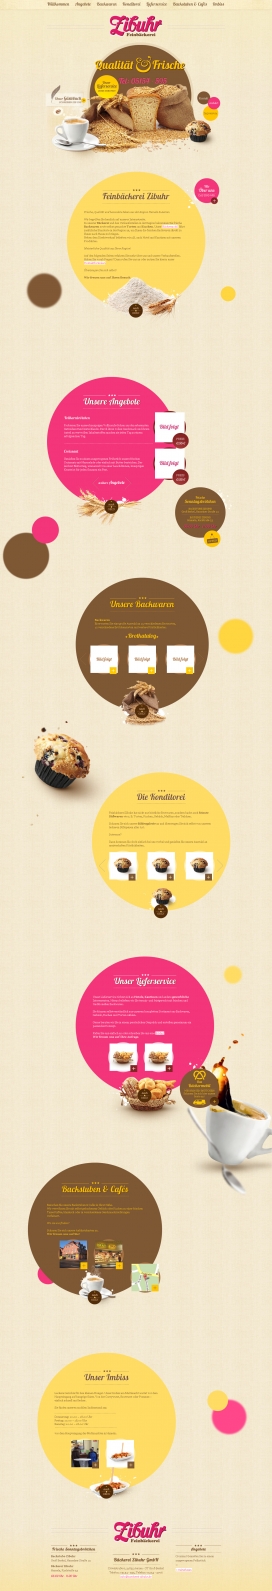 德国baeckerei-zibuhr新鲜面包店食品网站。